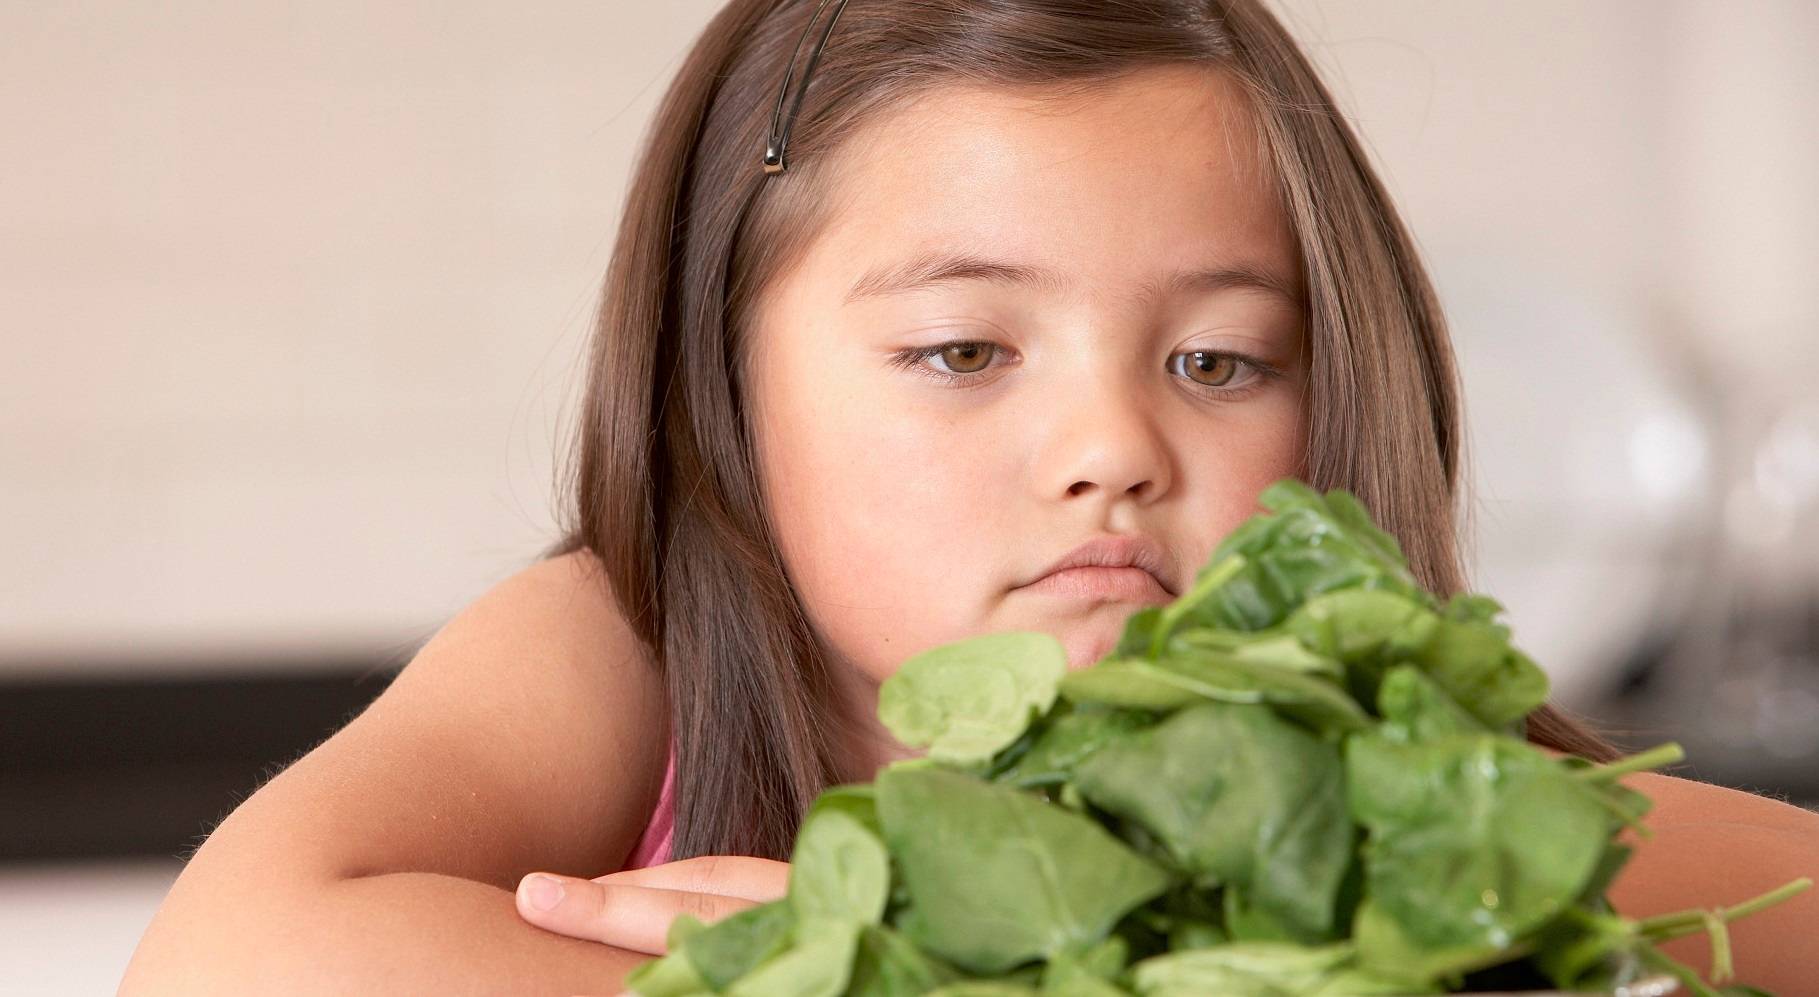 Meminta Anak Mengonsumsi Sayur, Apa yang Wajib Diperhatikan?